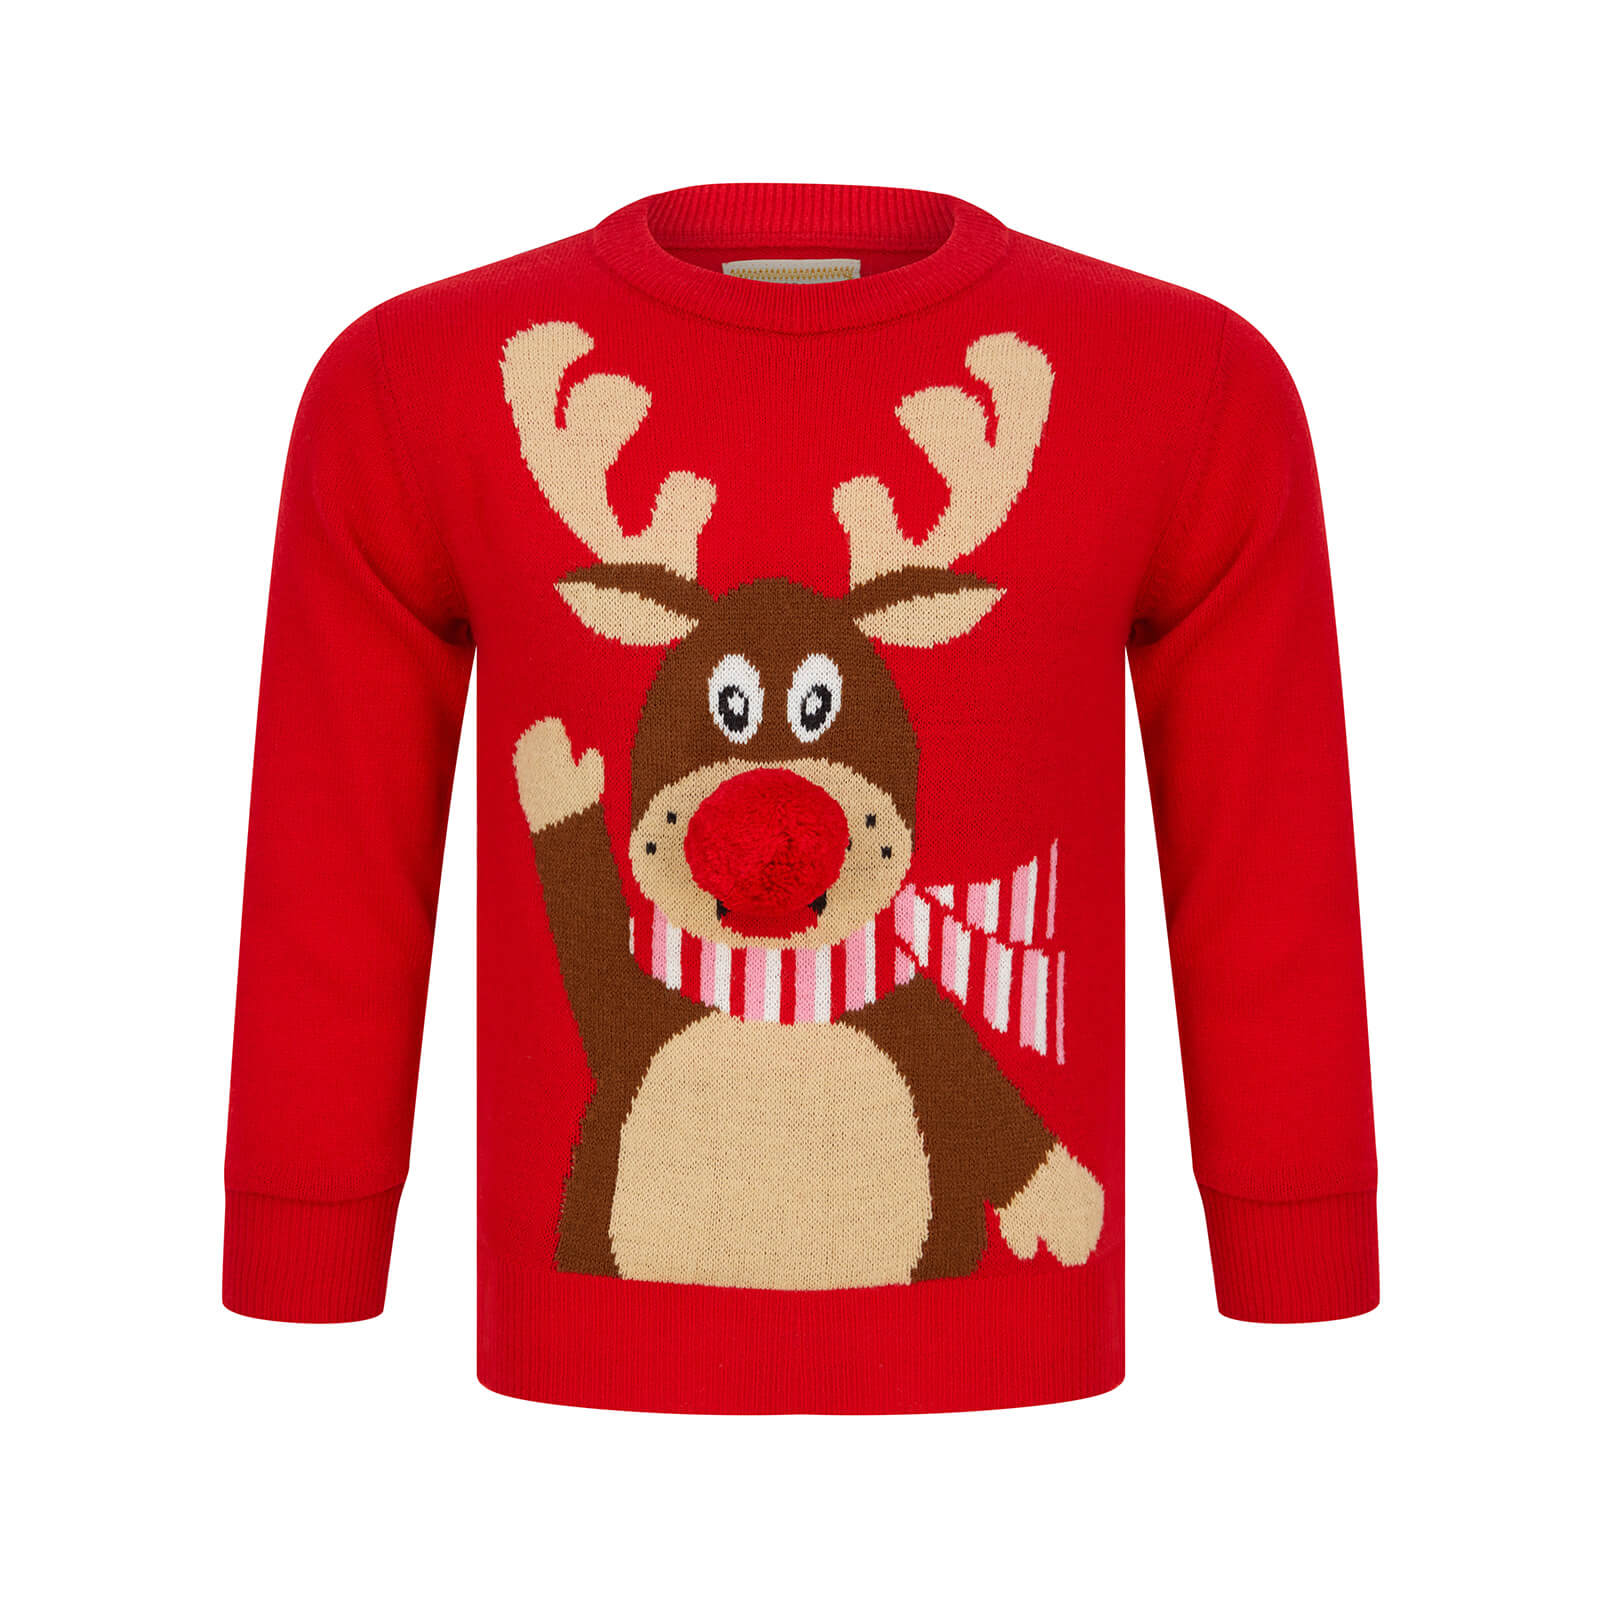 Mr Crimbo Kids Waving Reindeer Pom Pom Nose Christmas Jumper - MrCrimbo.co.uk -SRG4A190271_F - Red -11-13 years